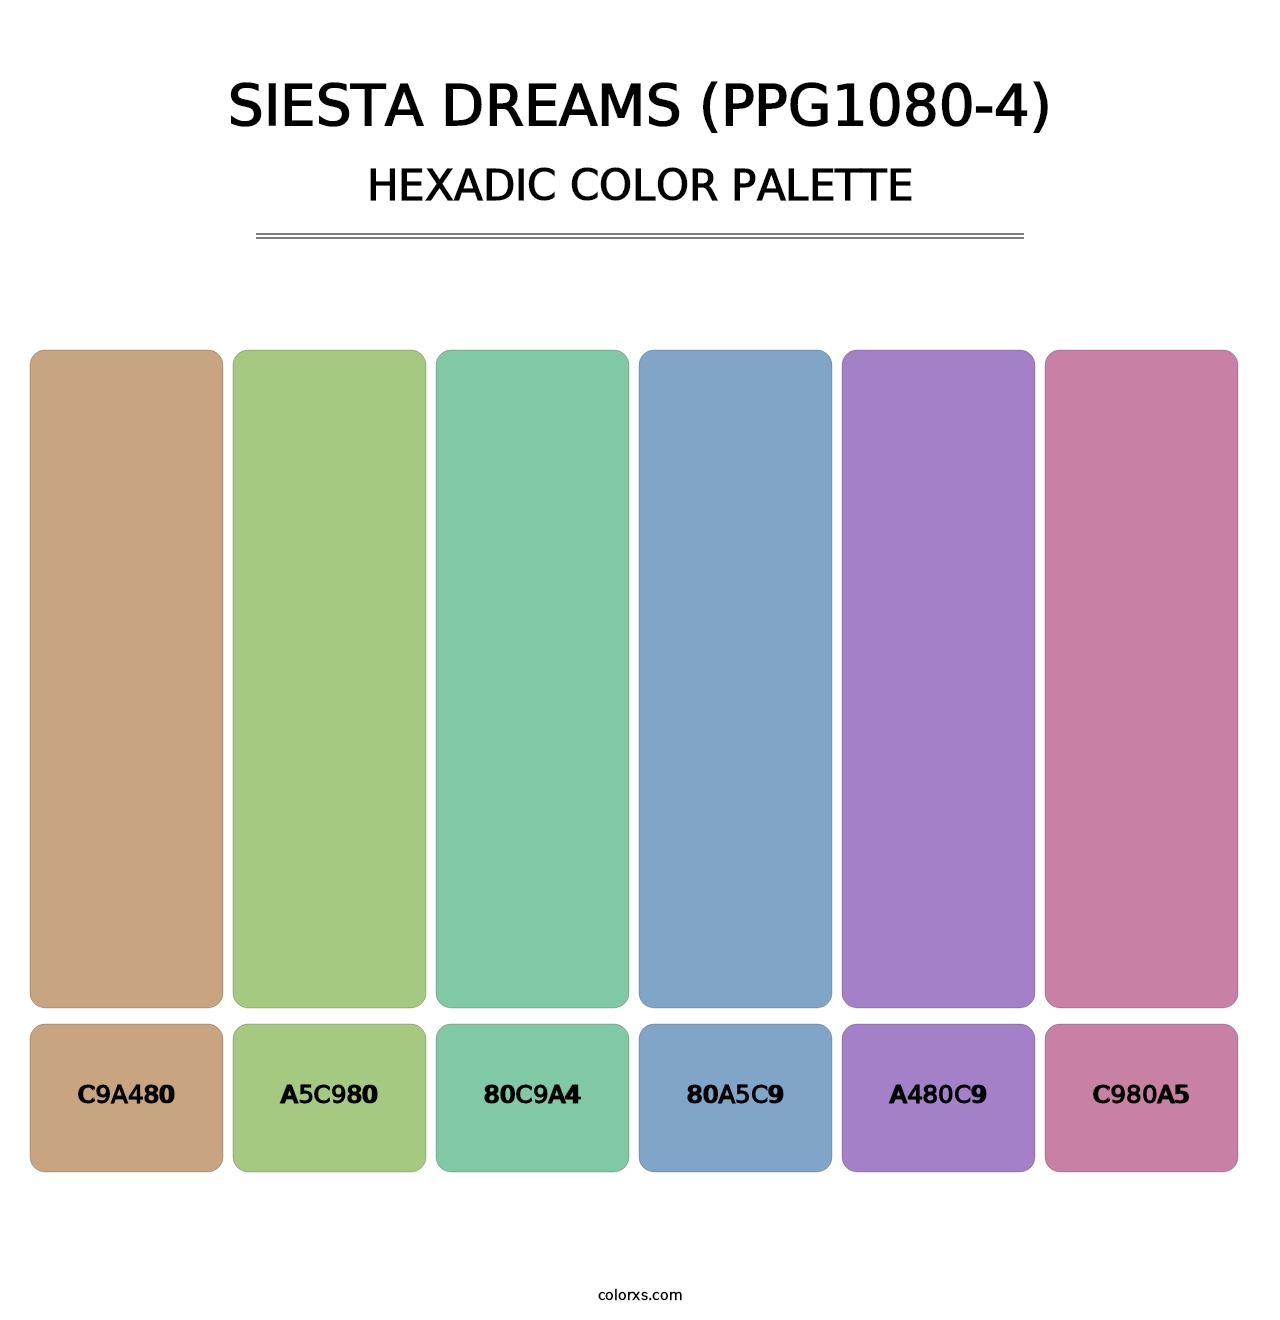 Siesta Dreams (PPG1080-4) - Hexadic Color Palette